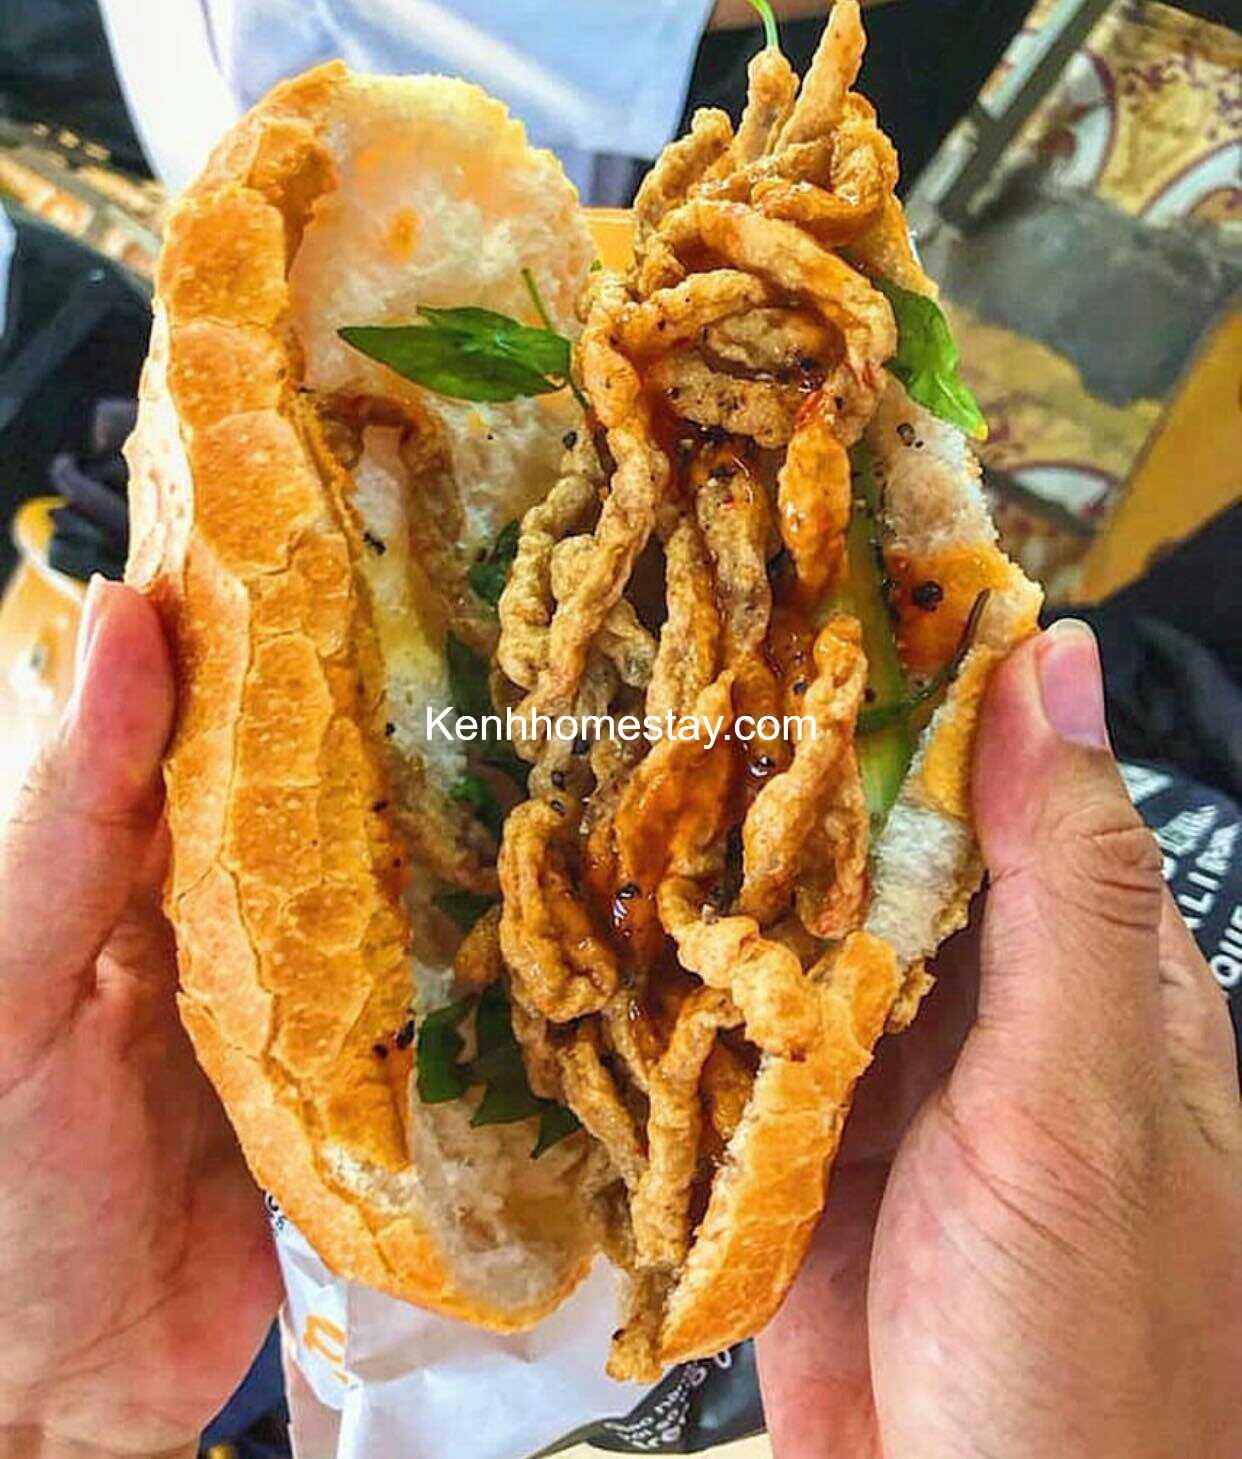 Top 15 Quán bánh mì ngon ở Sài Gòn – TPHCM giá rẻ đông khách nhất 